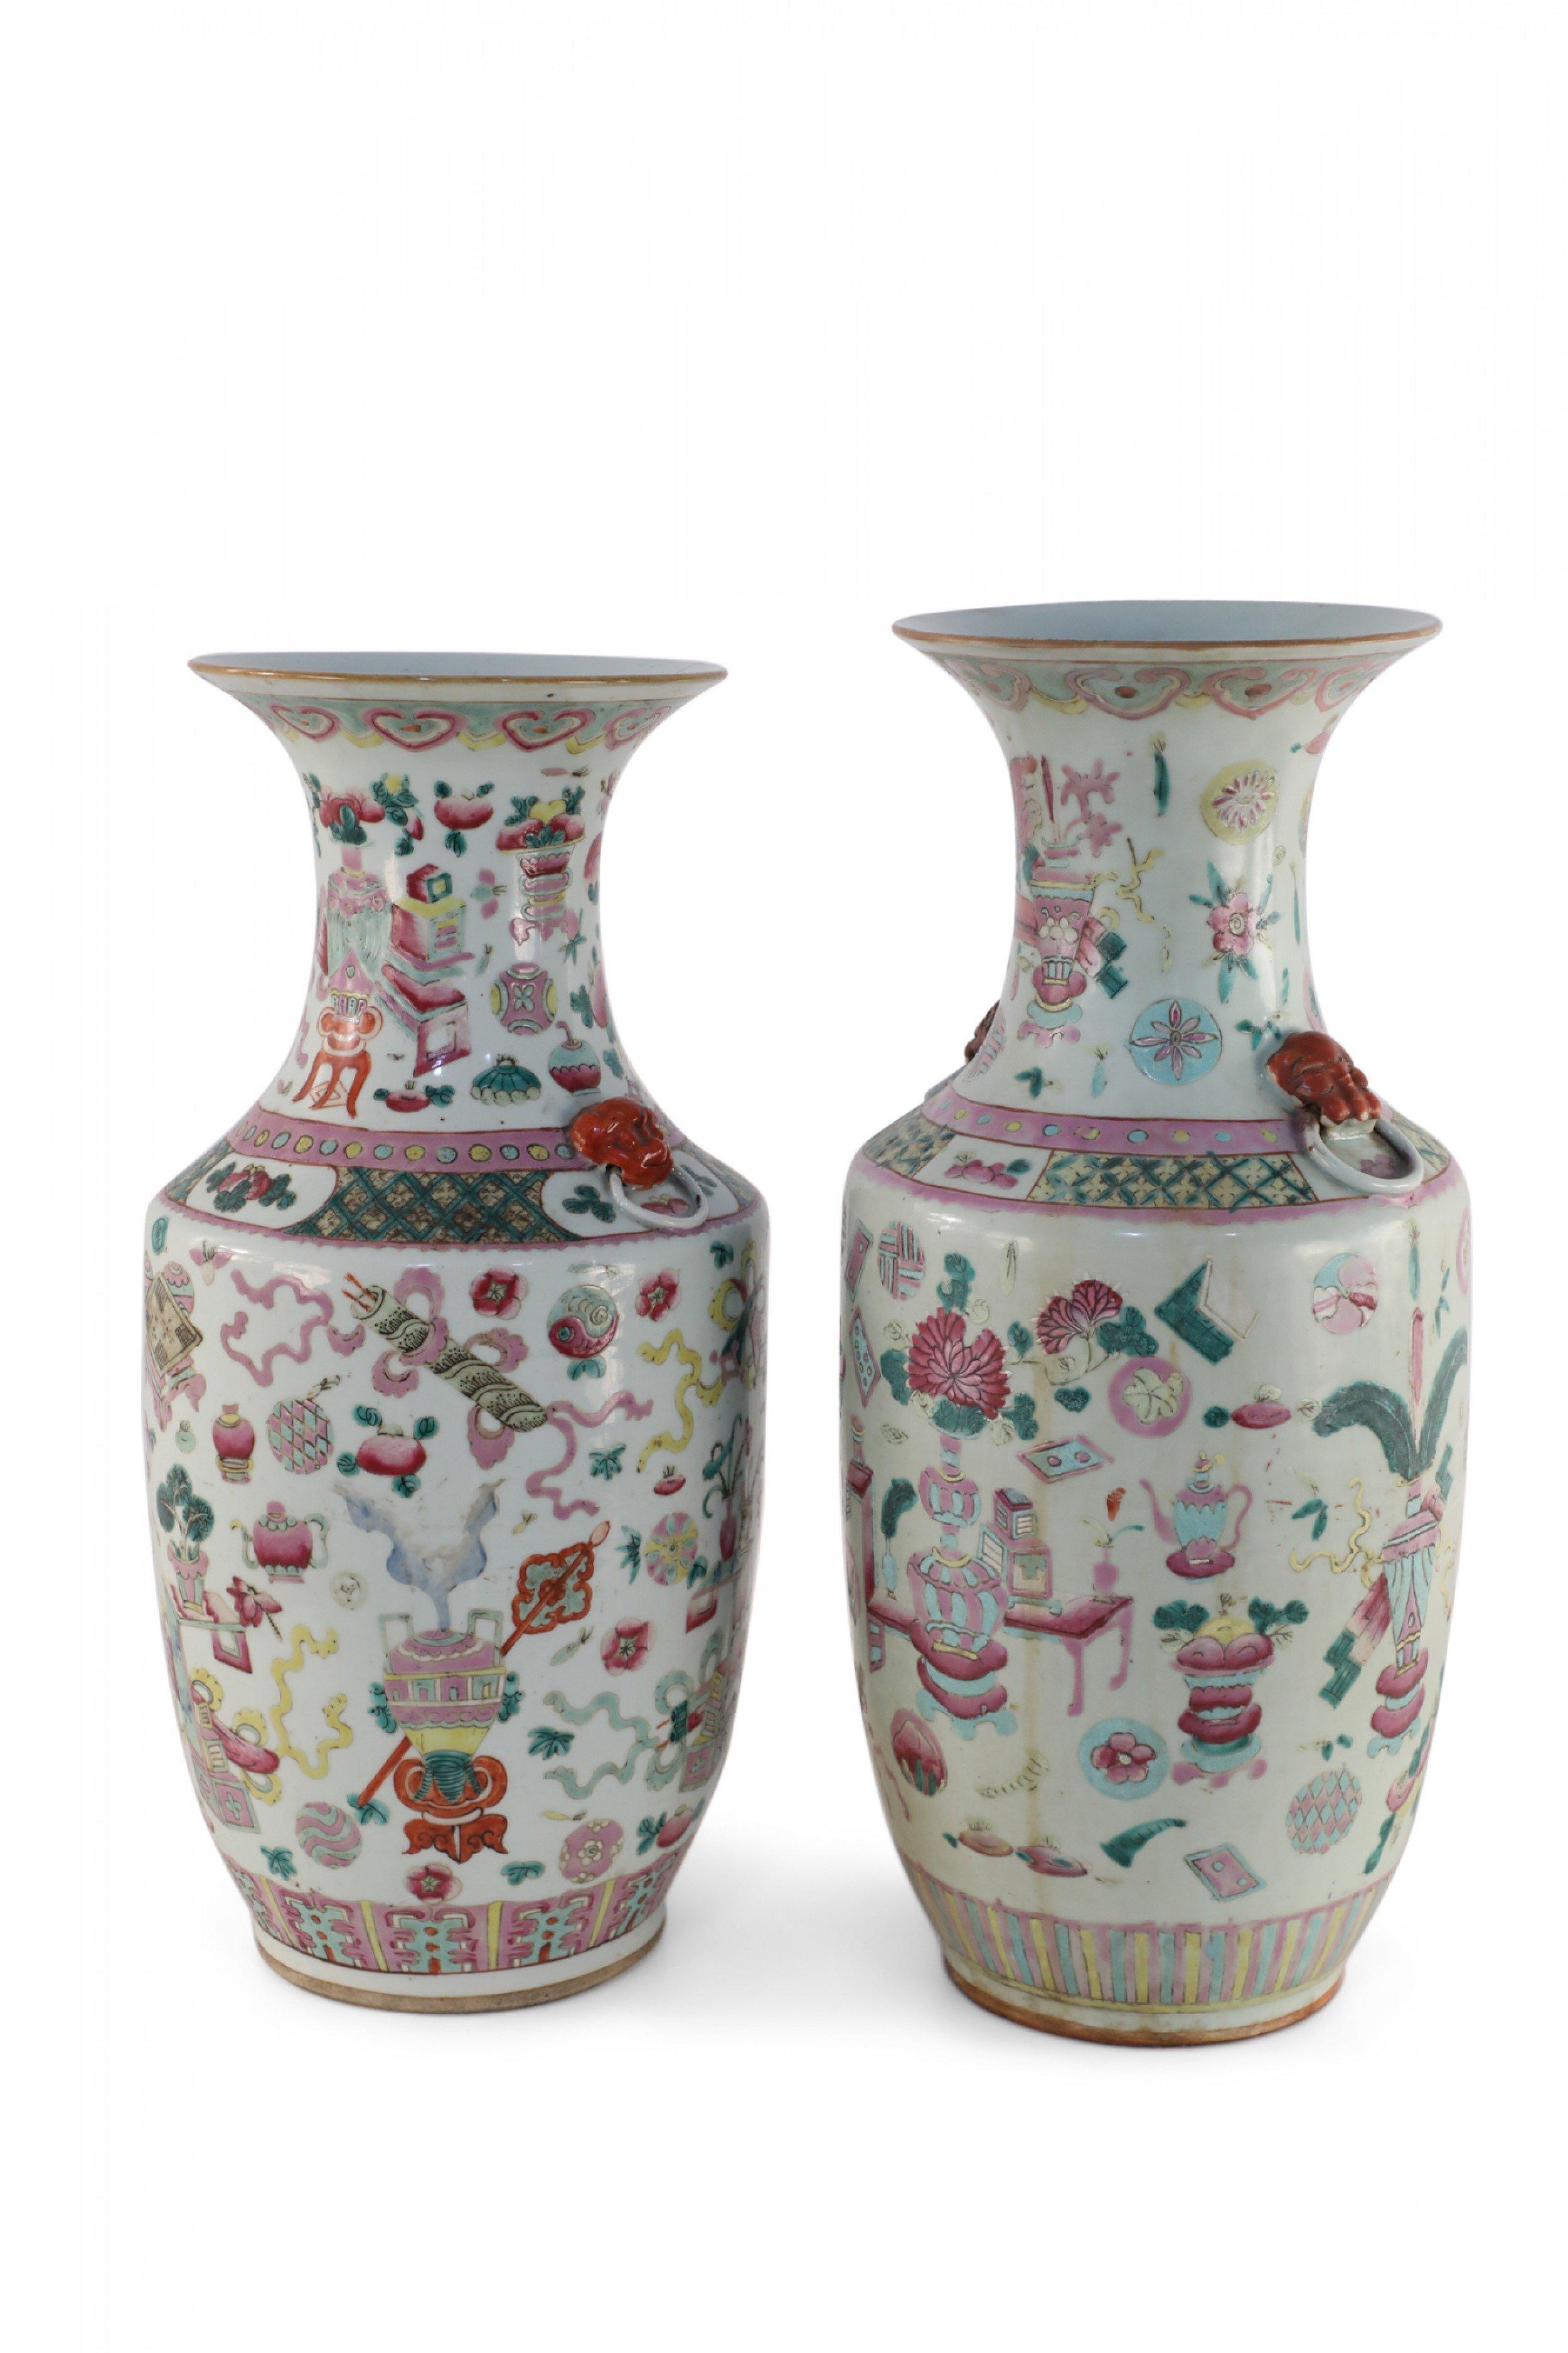 gabriel nichols pottery for sale